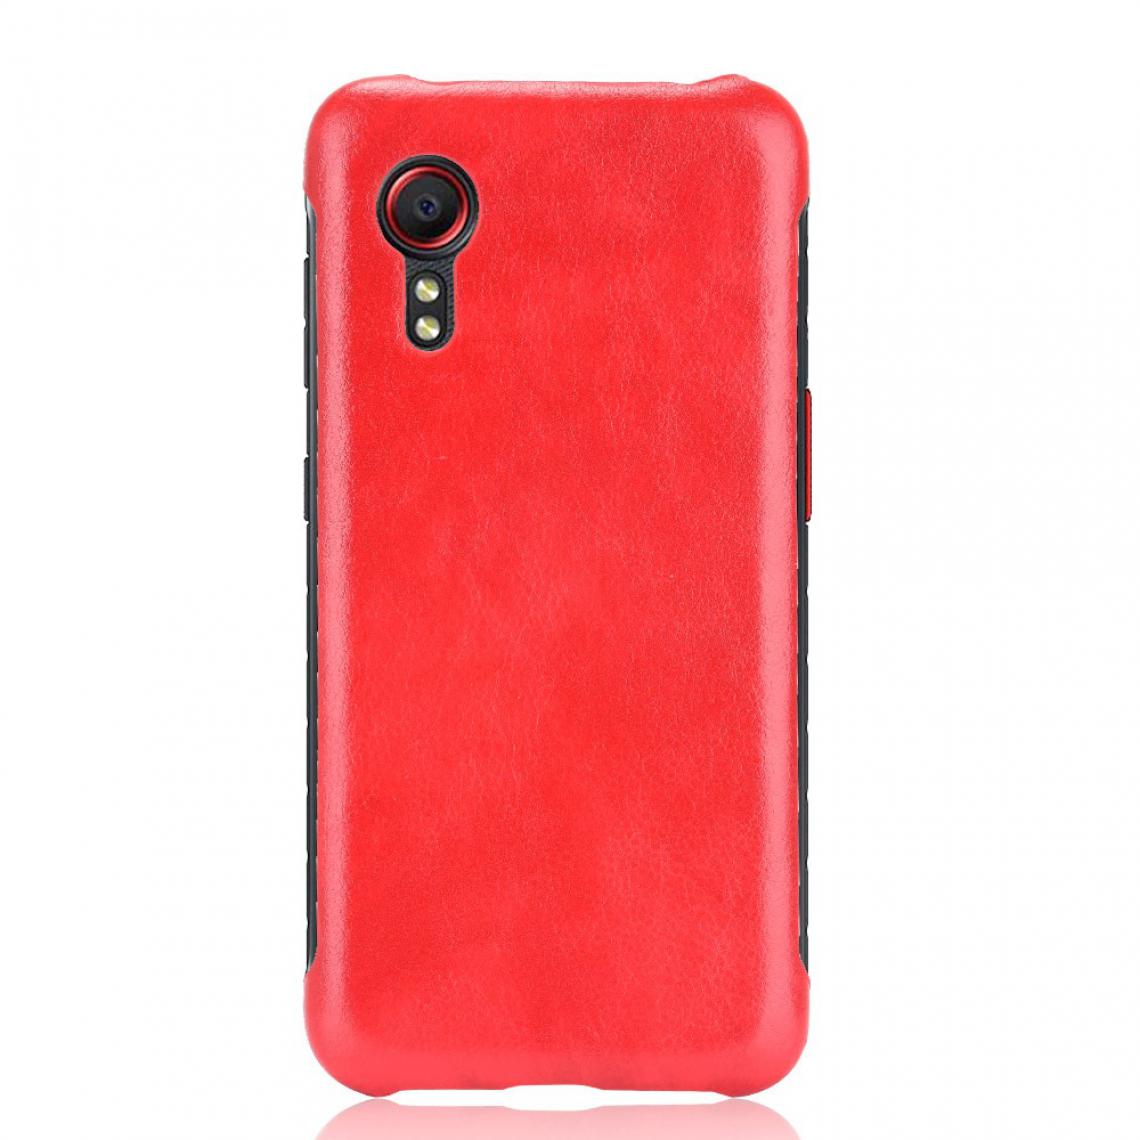 Other - Coque en TPU + PU Litchi Texture Antichoc Enduit rouge pour votre Samsung Galaxy Xcover 5 - Coque, étui smartphone